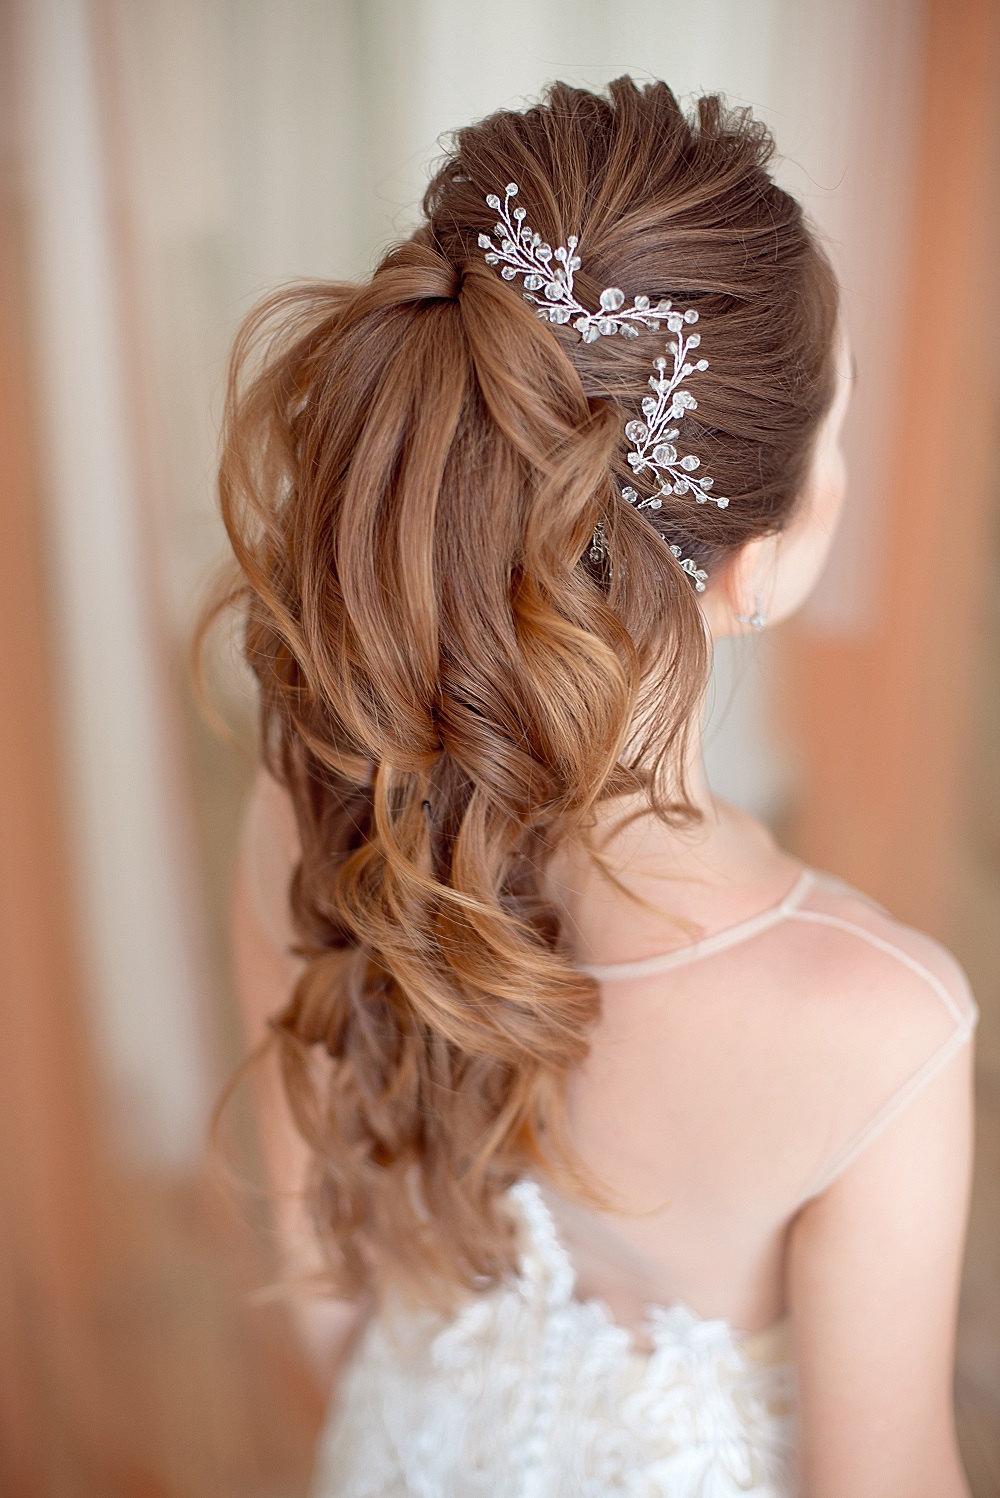 Piękny kok z długich włosów jako przykład fryzury na wesele.